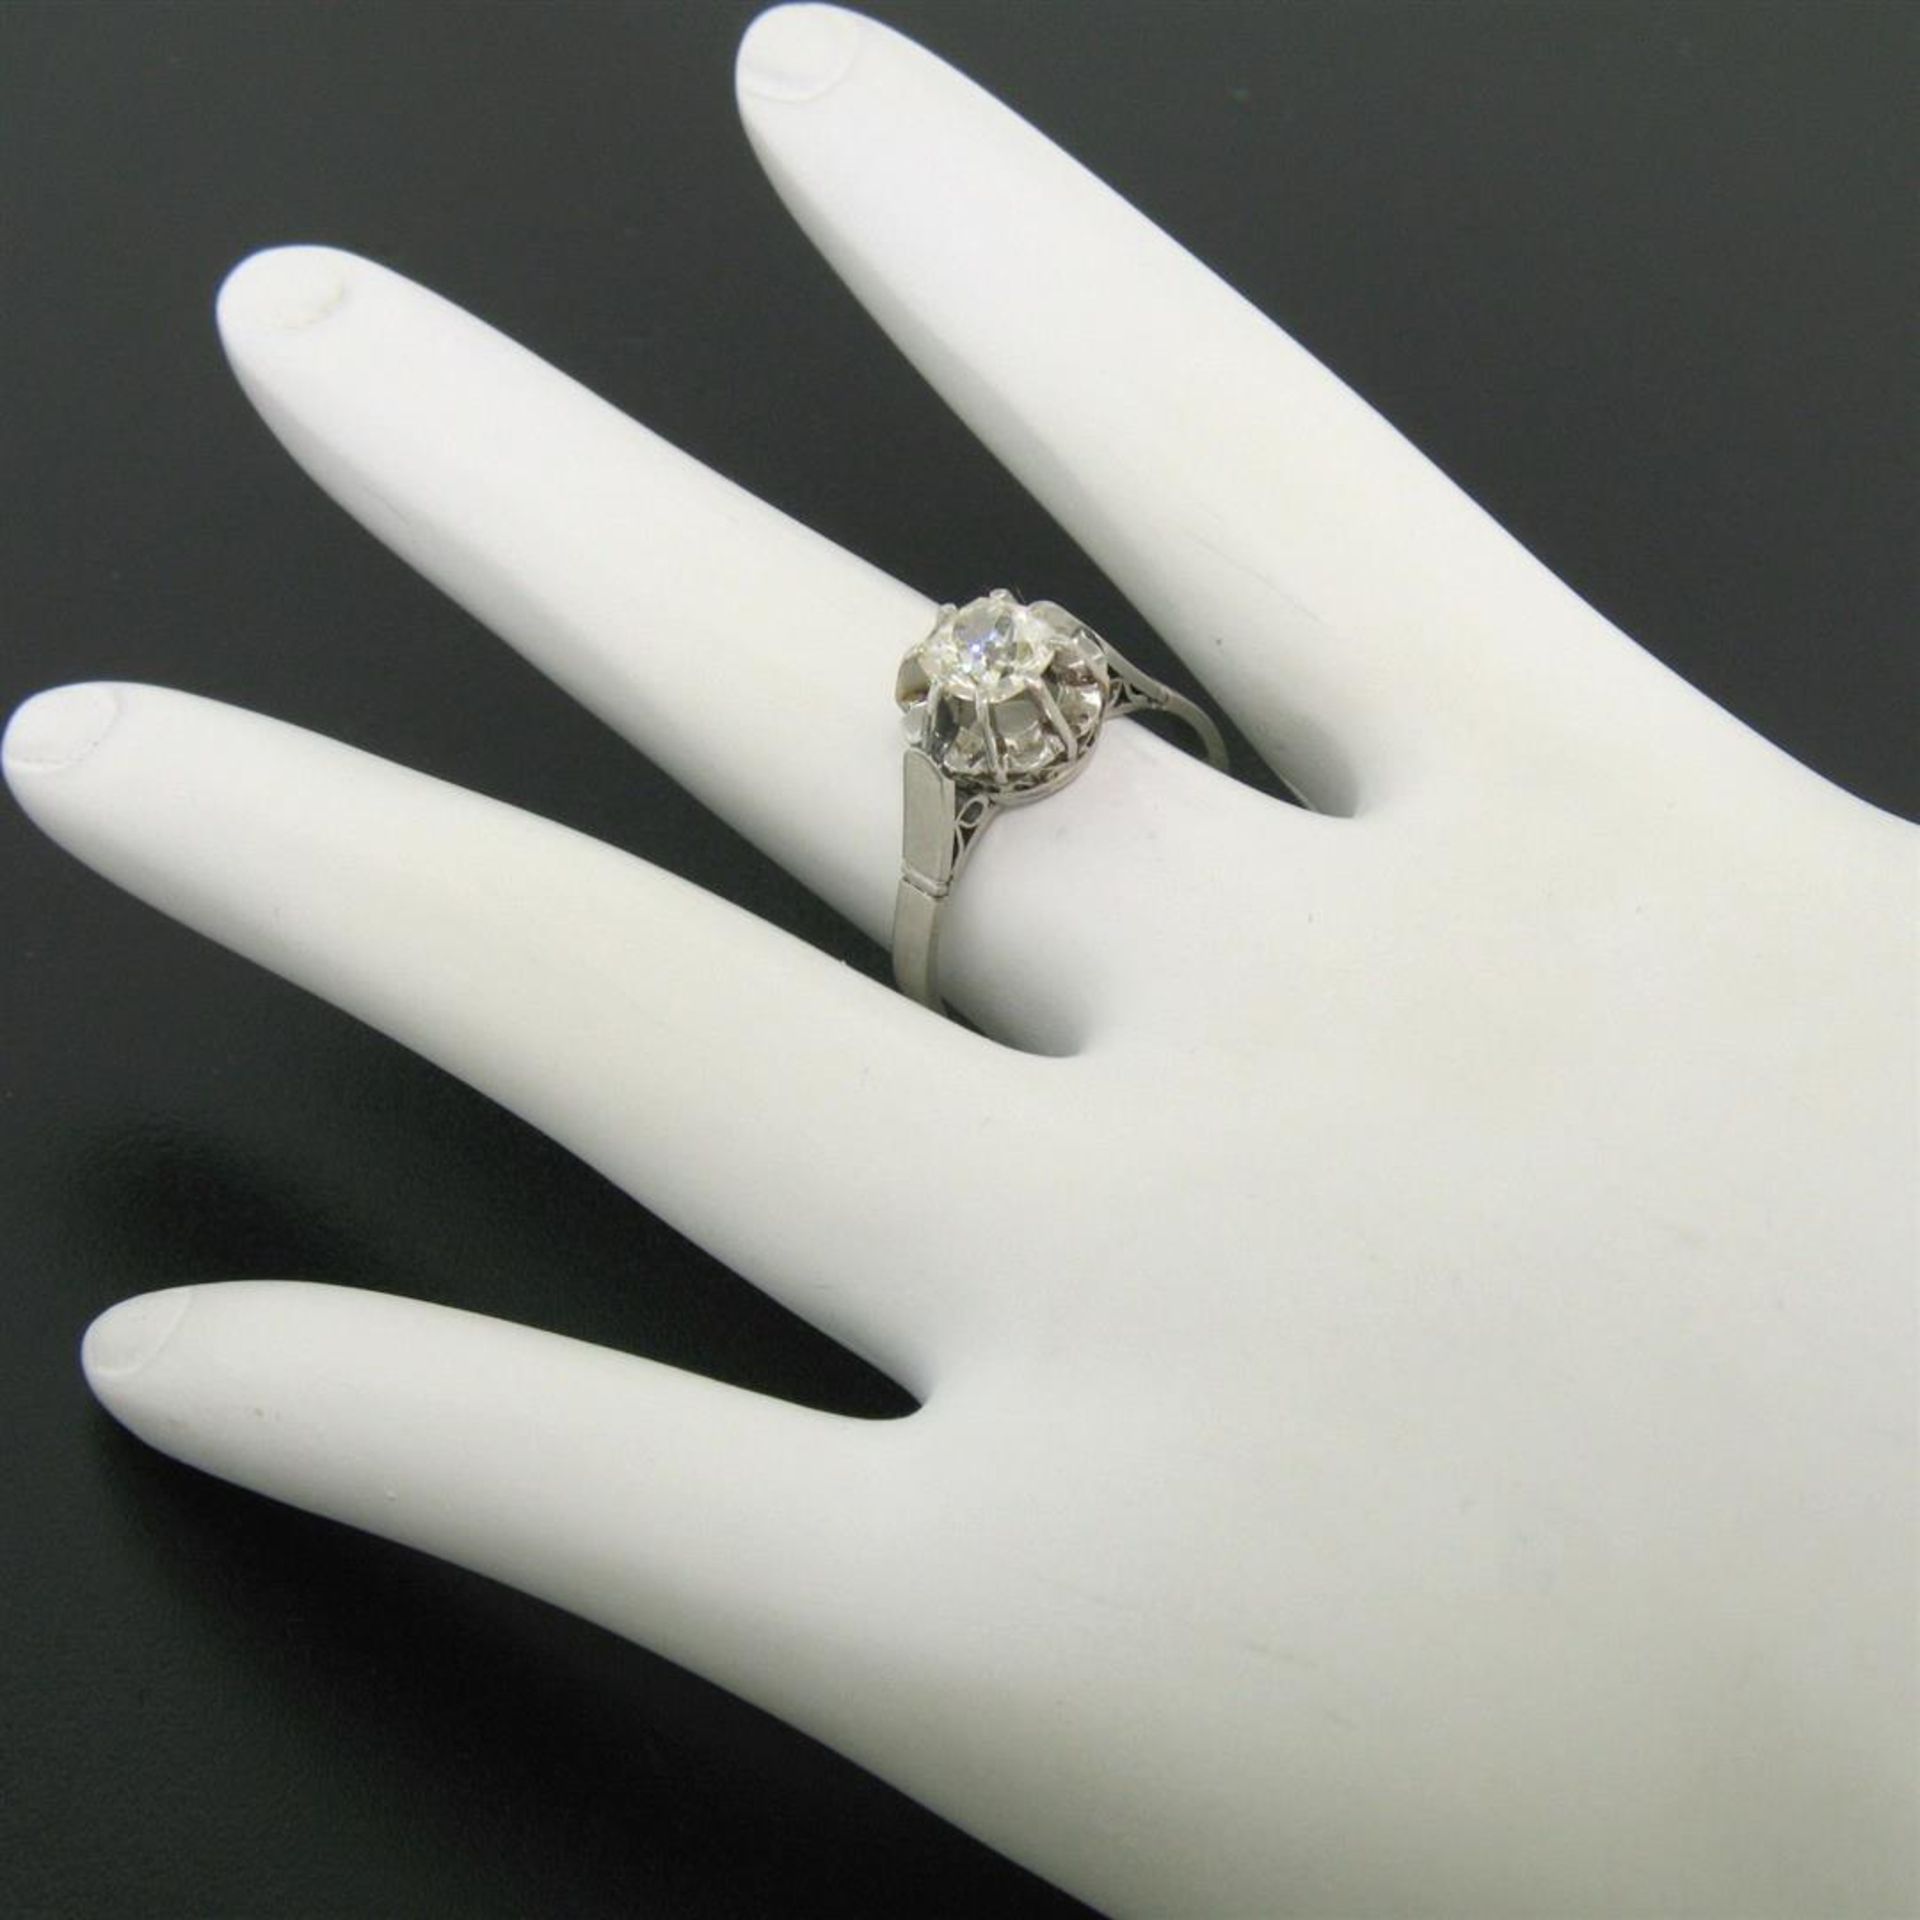 Antique Art Deco Platinum 0.78ct Old Mine Cut Diamond Filigree Engagement Ring - Image 3 of 9